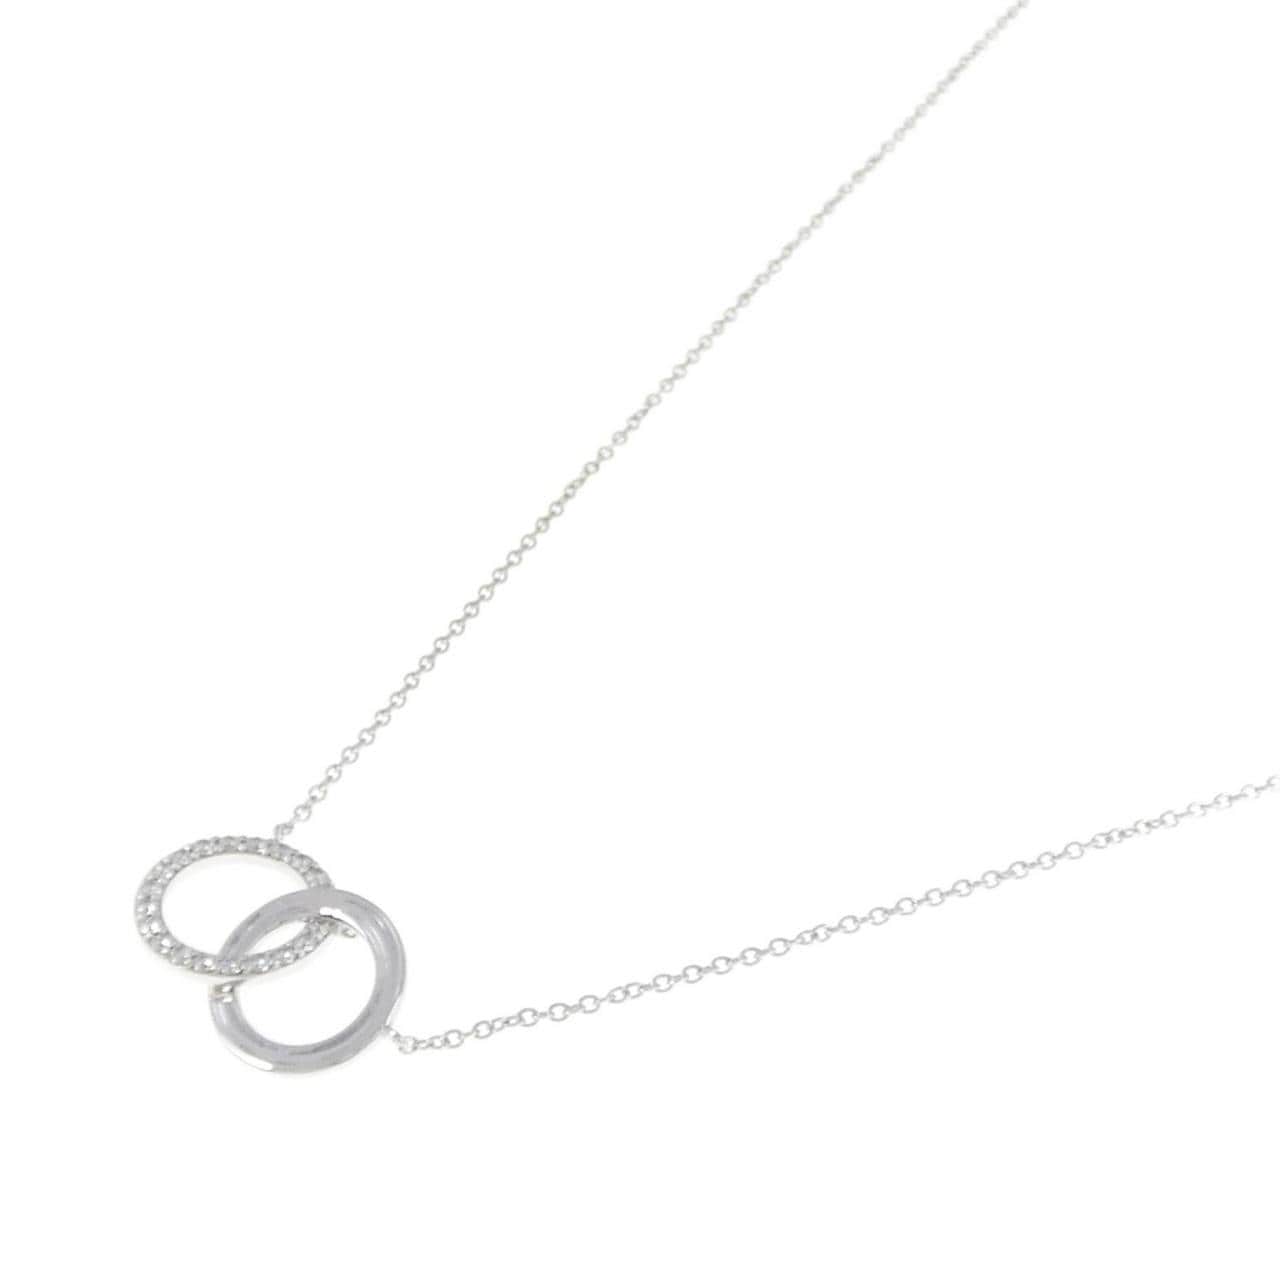 TIFFANY 1837 Double Interlocking Circle Necklace